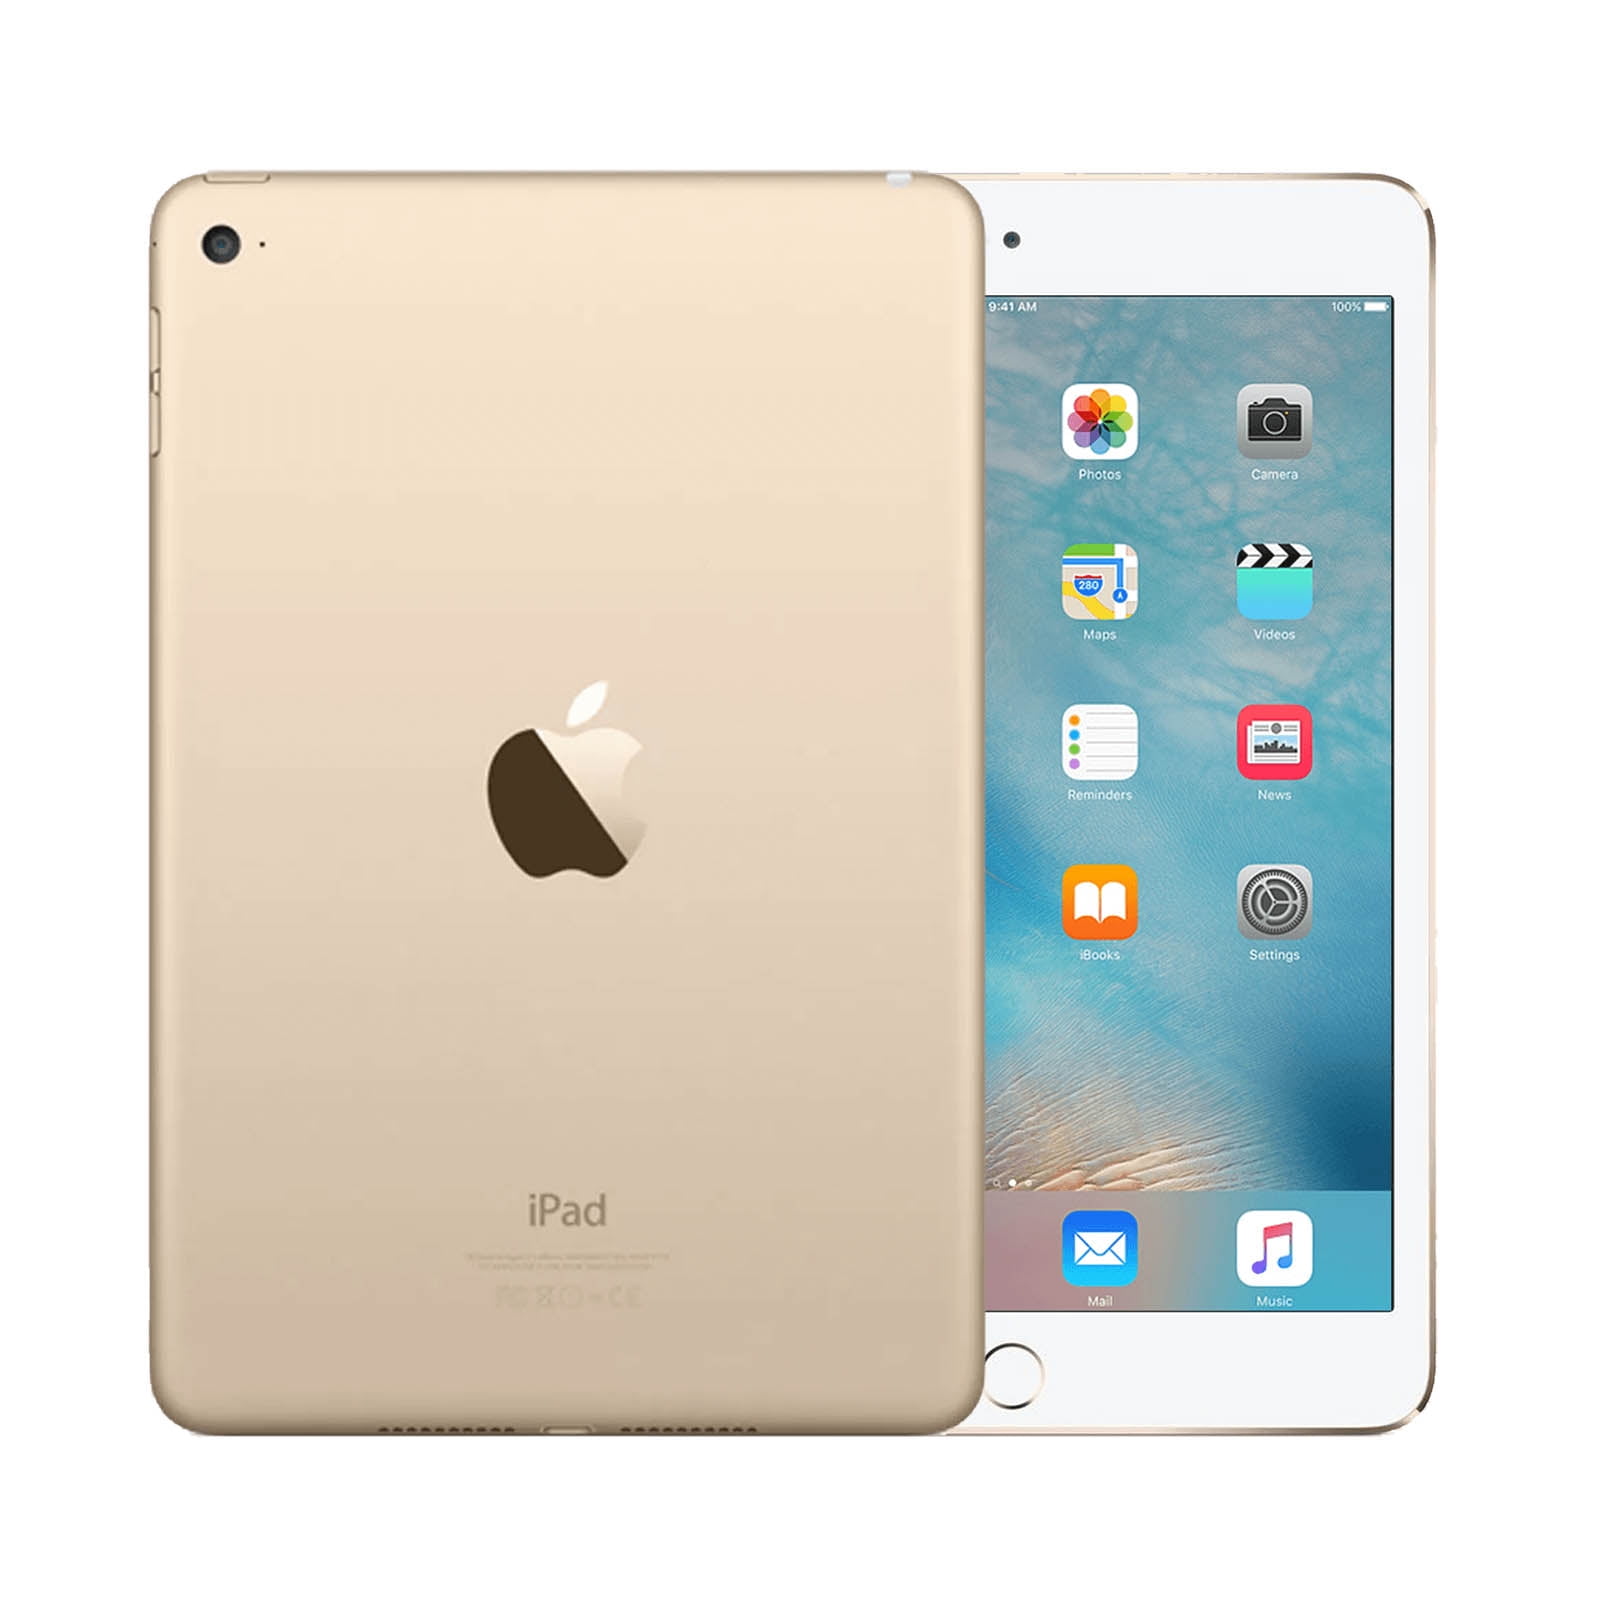 ショッピング買い 4 mini iPad Apple Wi-Fi A1538 GOLD 64GB タブレット